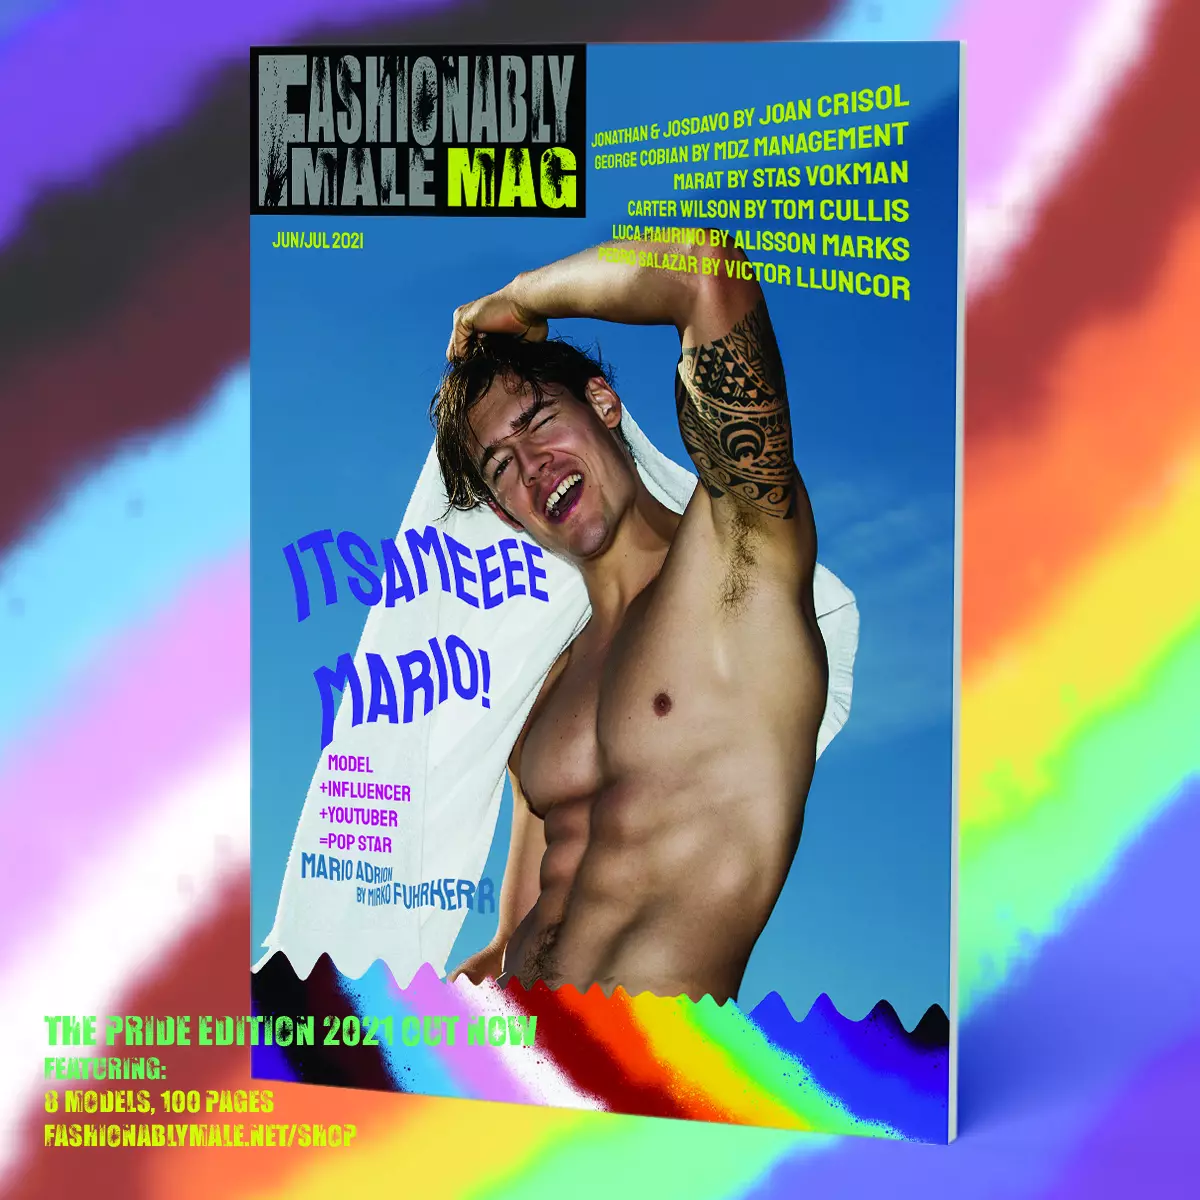 Mario Adrion don Salon Male Mag Pride Edition 2021 samfurin murfin kayan kwalliya